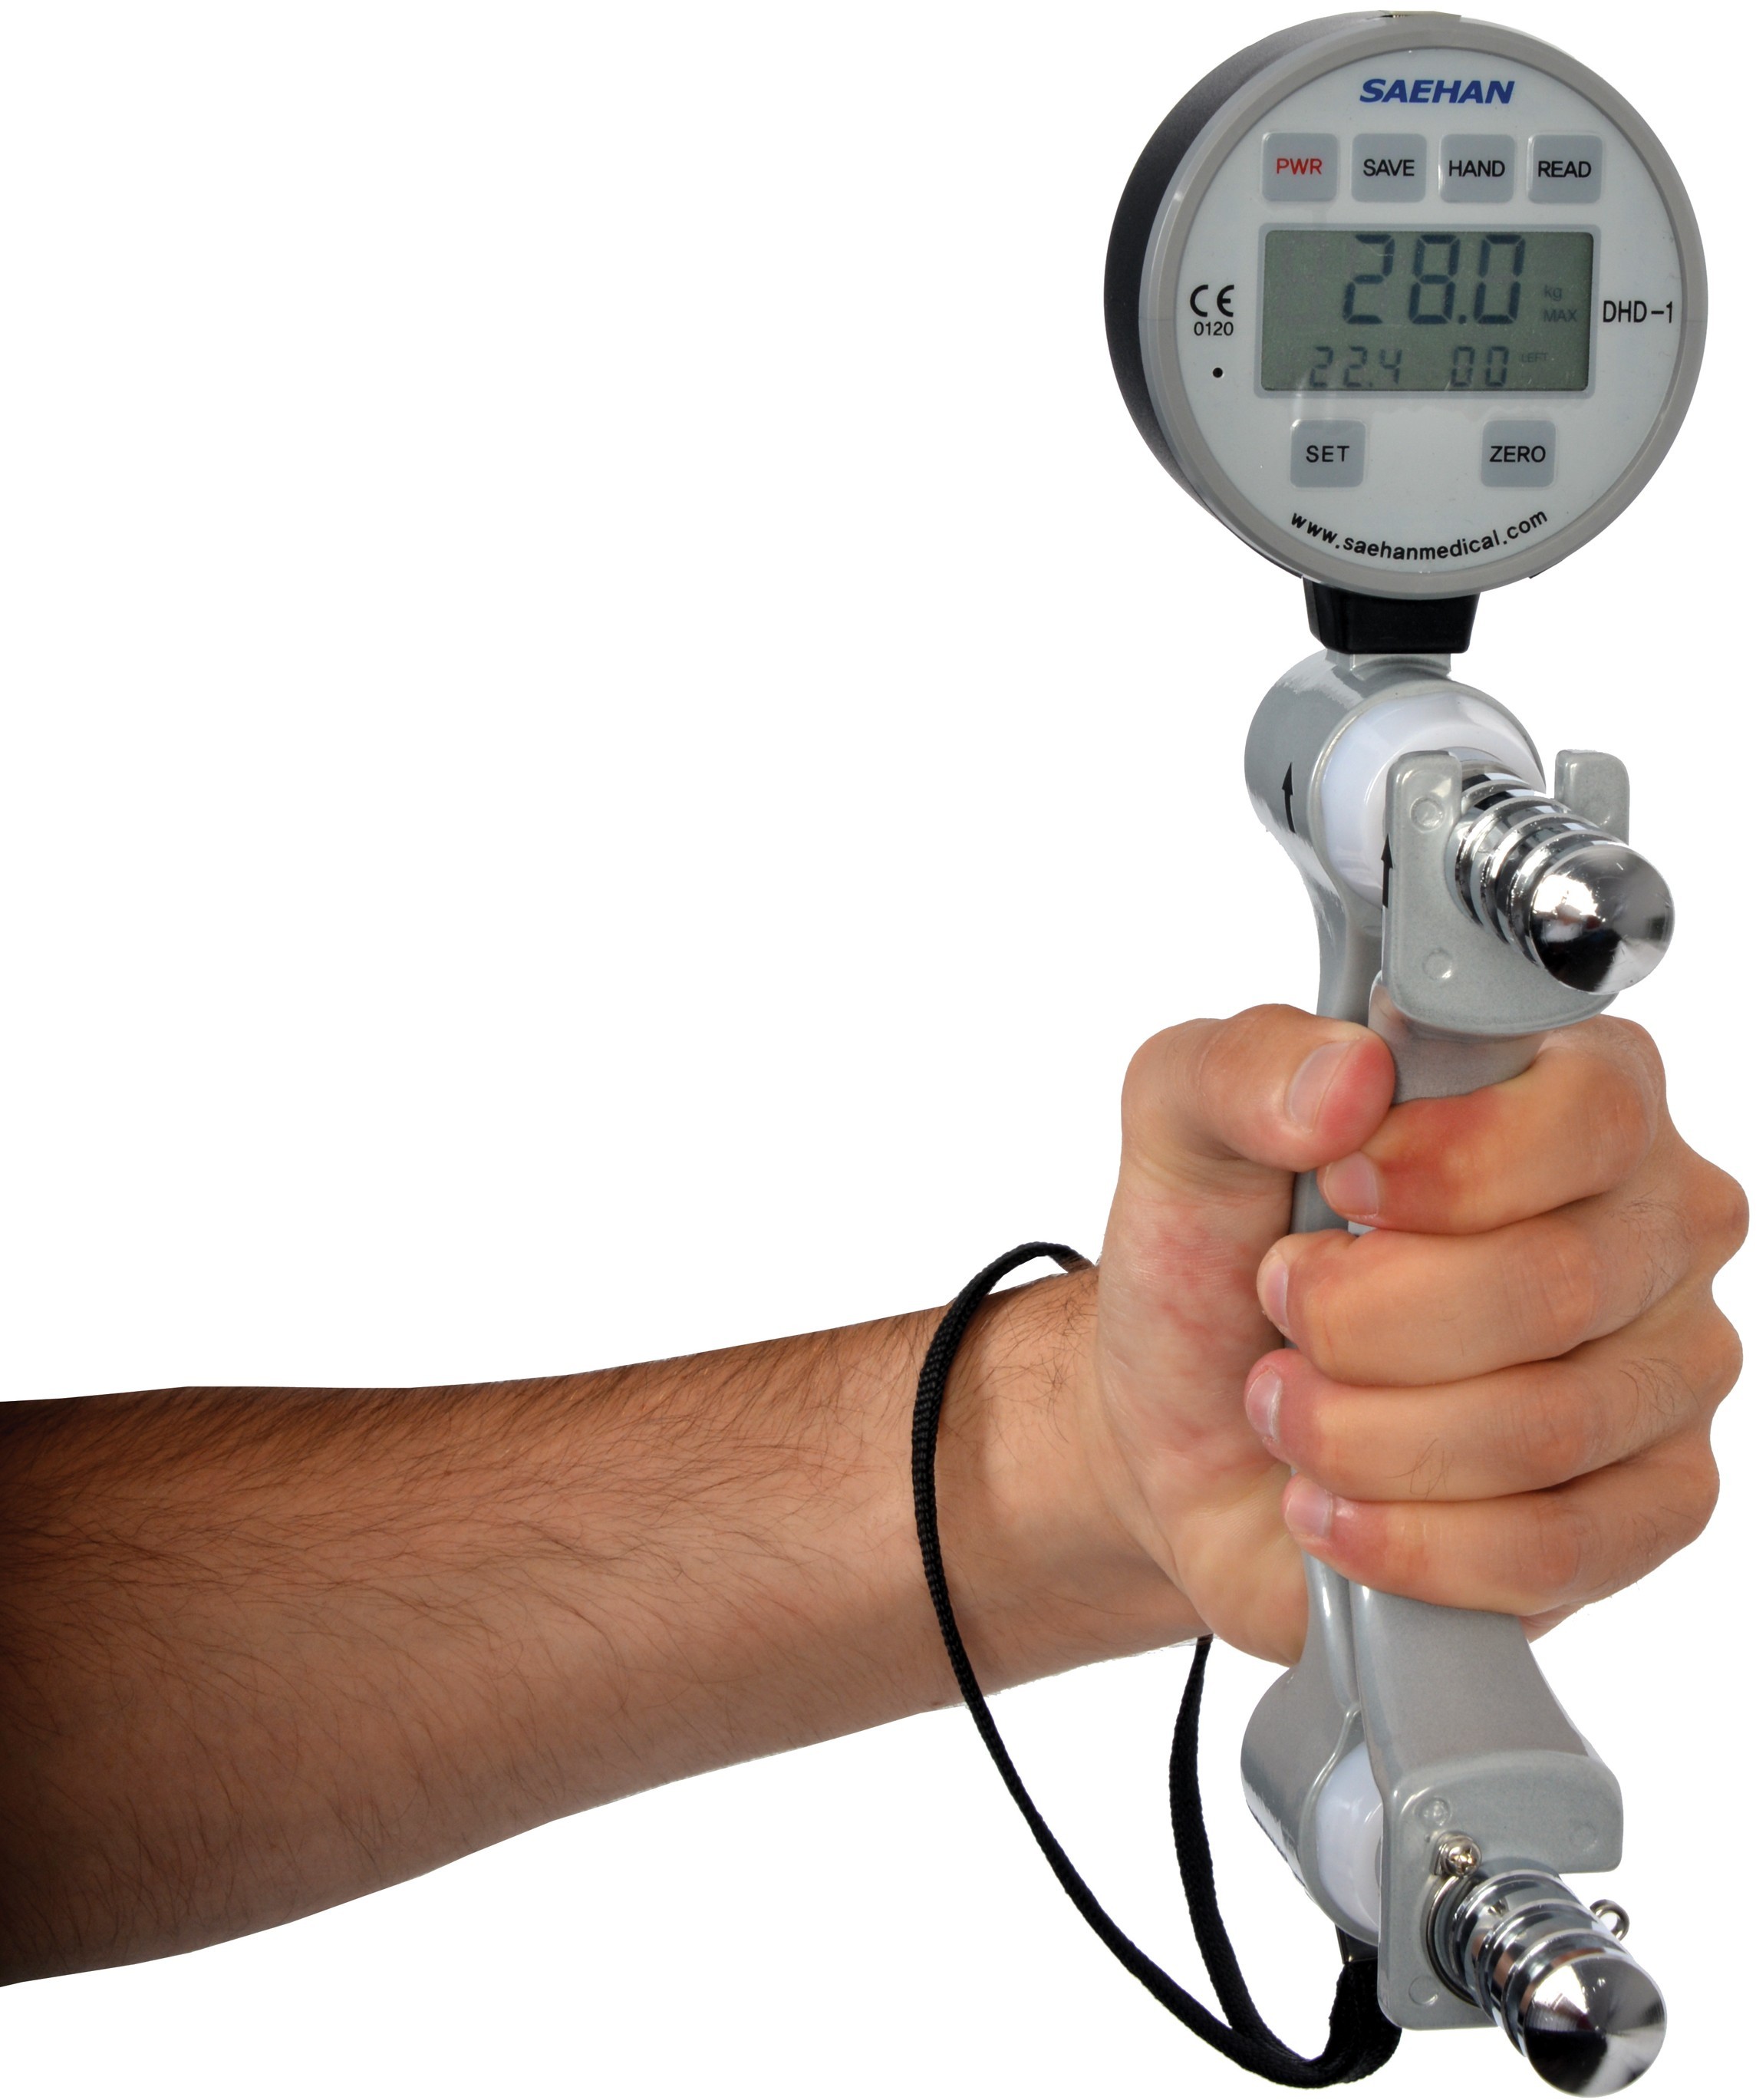 MSD Cyfrowy dynamometr (siłomierz) do pomiaru siły rąk - 08-010201 001/416